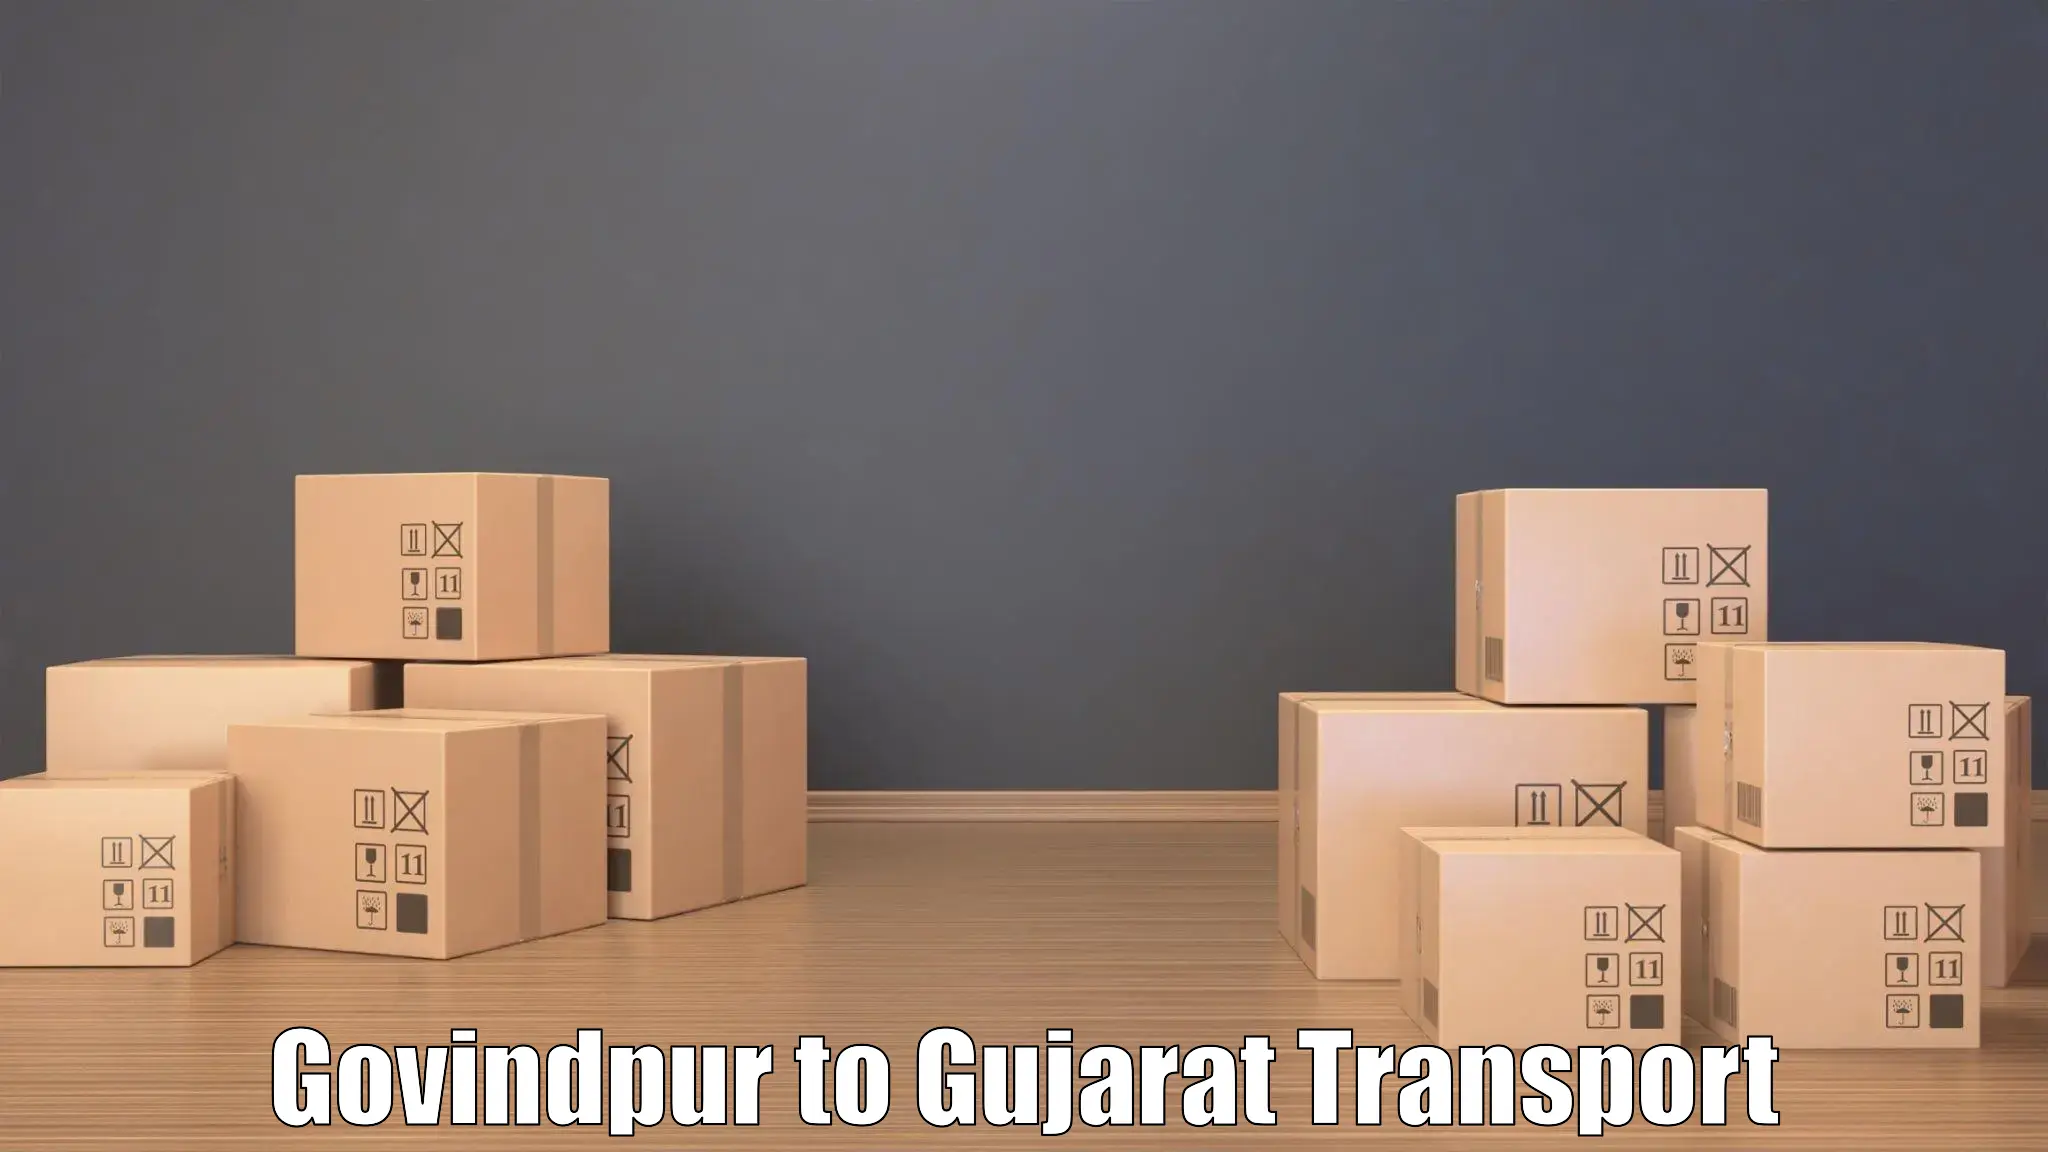 Container transportation services Govindpur to Karjan